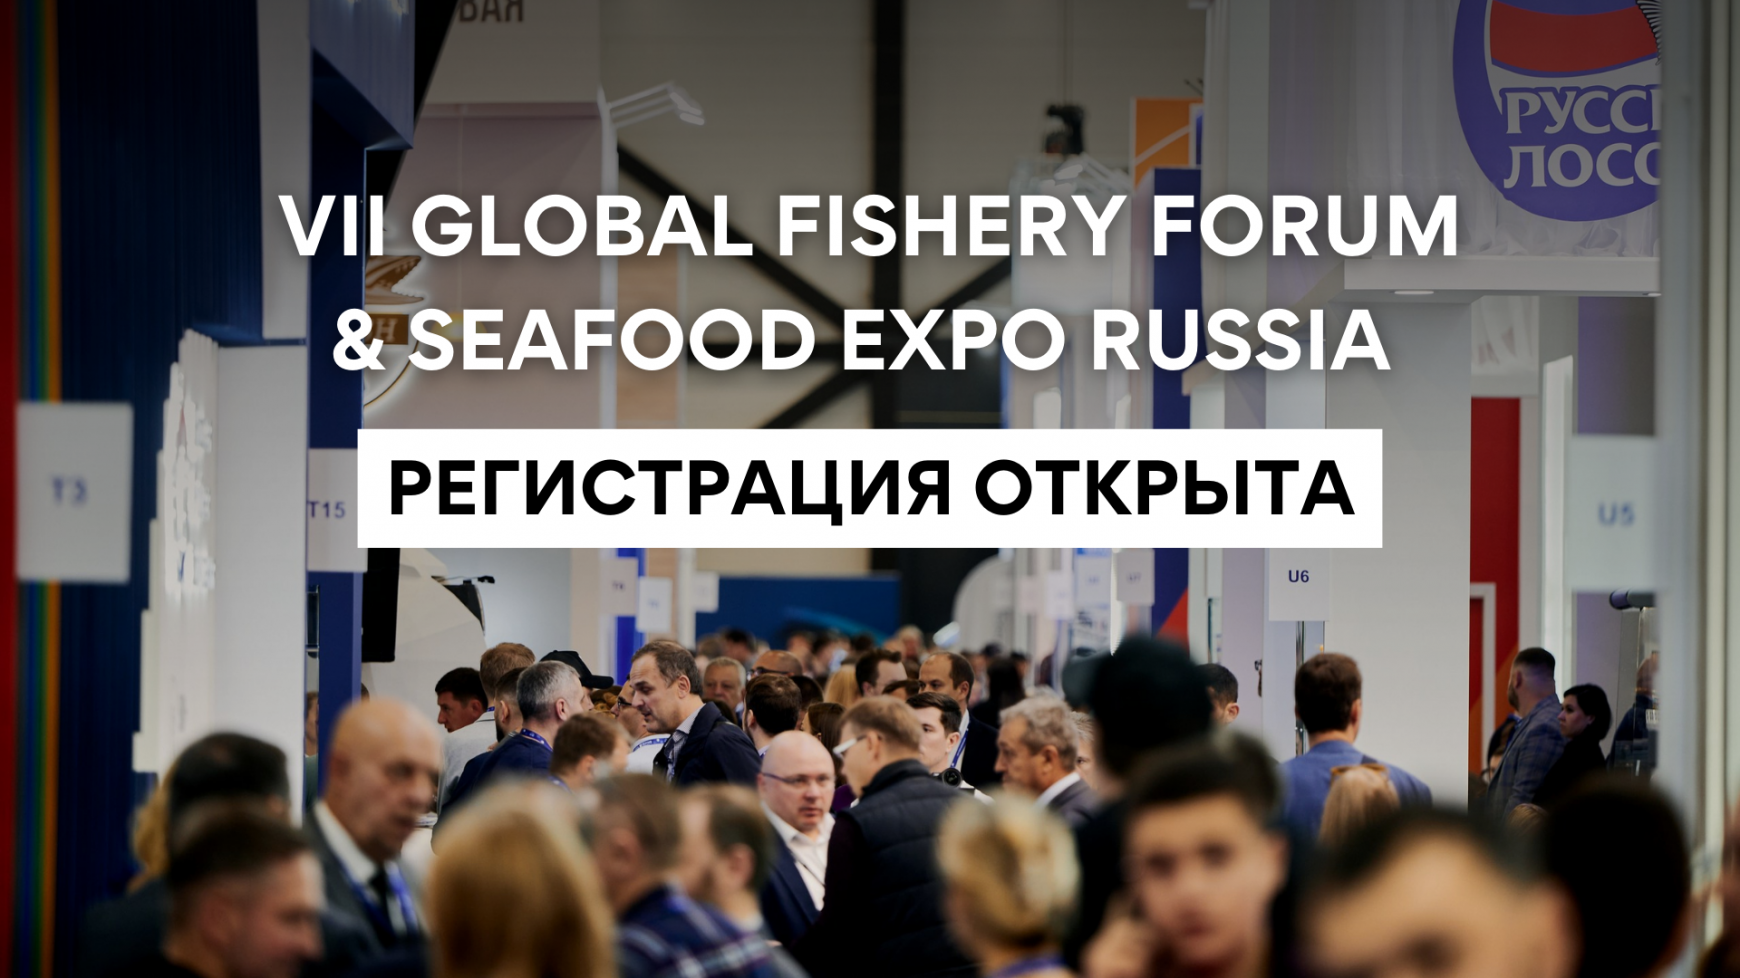 Открыта регистрация на VII Международный рыбопромышленный форум и выставку рыбной индустрии, морепродуктов и технологий